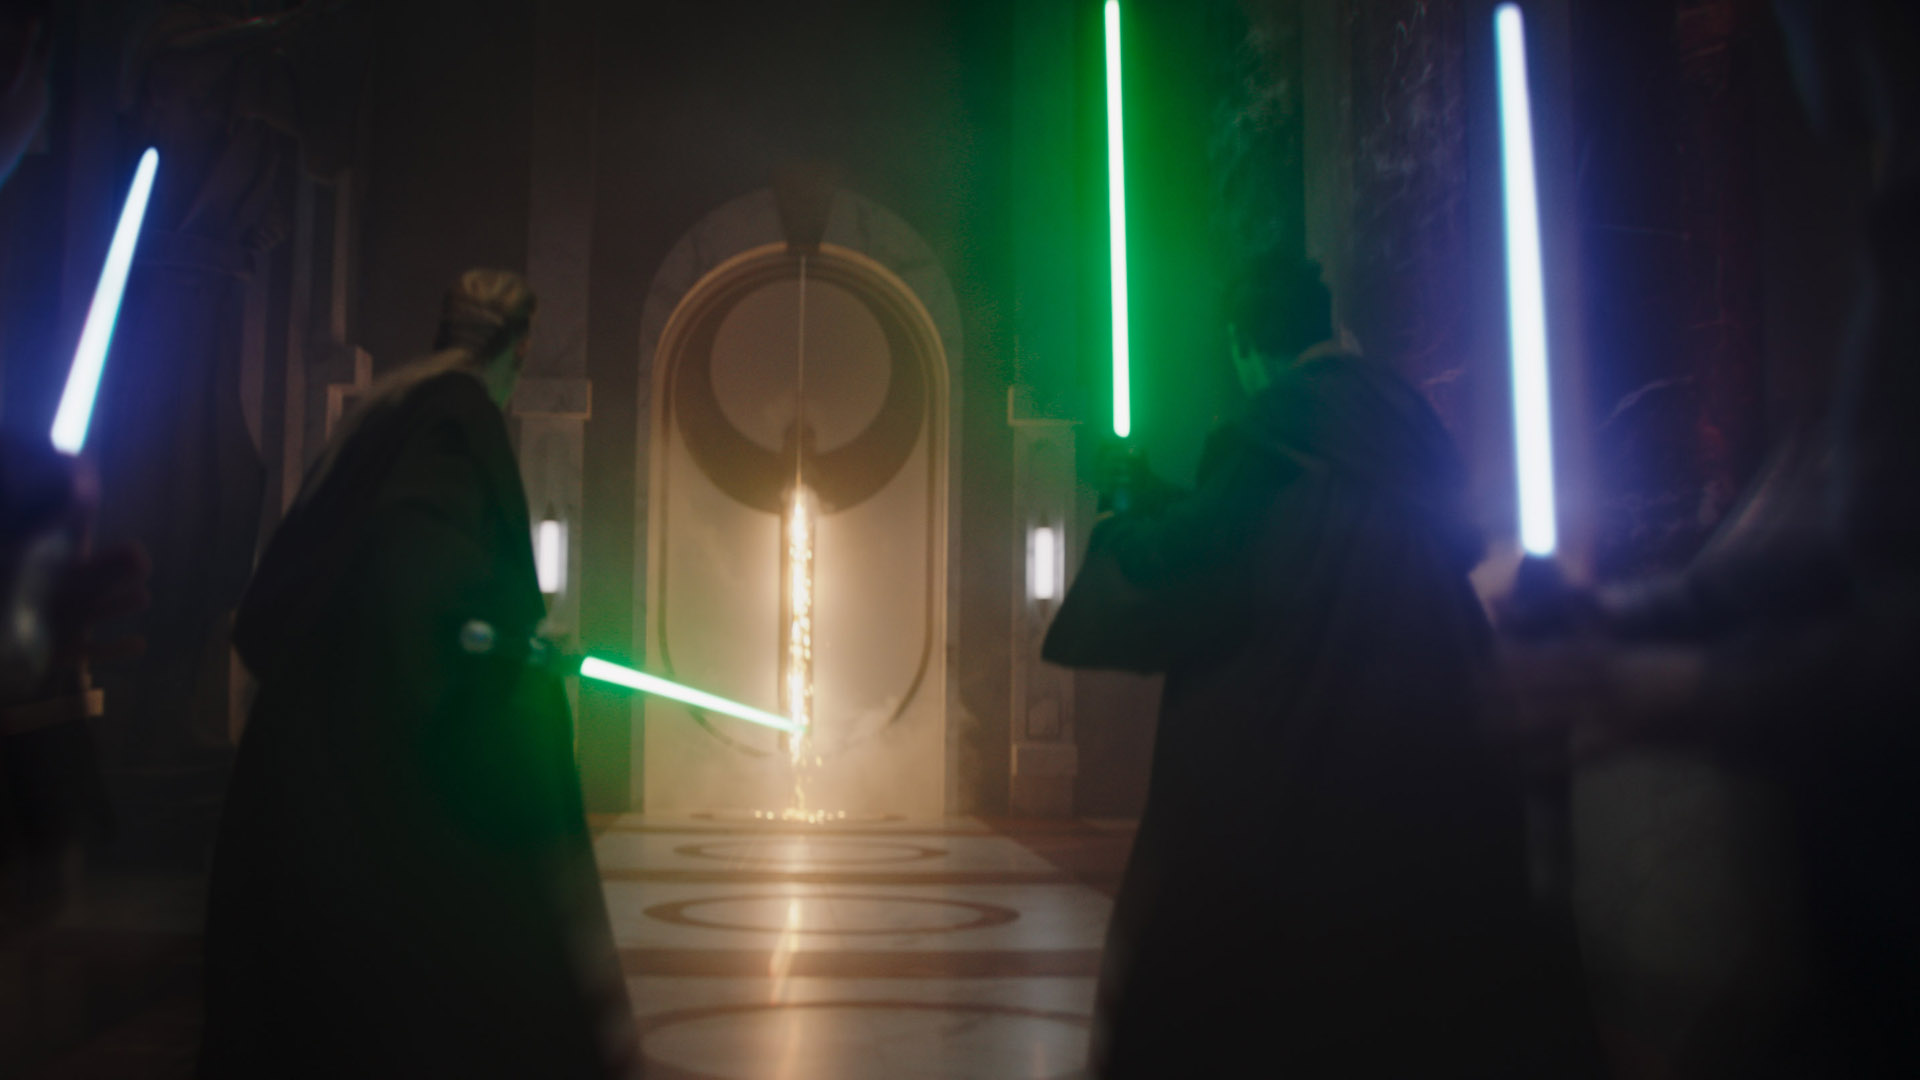 Four Jedi prepare to defend the temple in The Mandalorian season 3